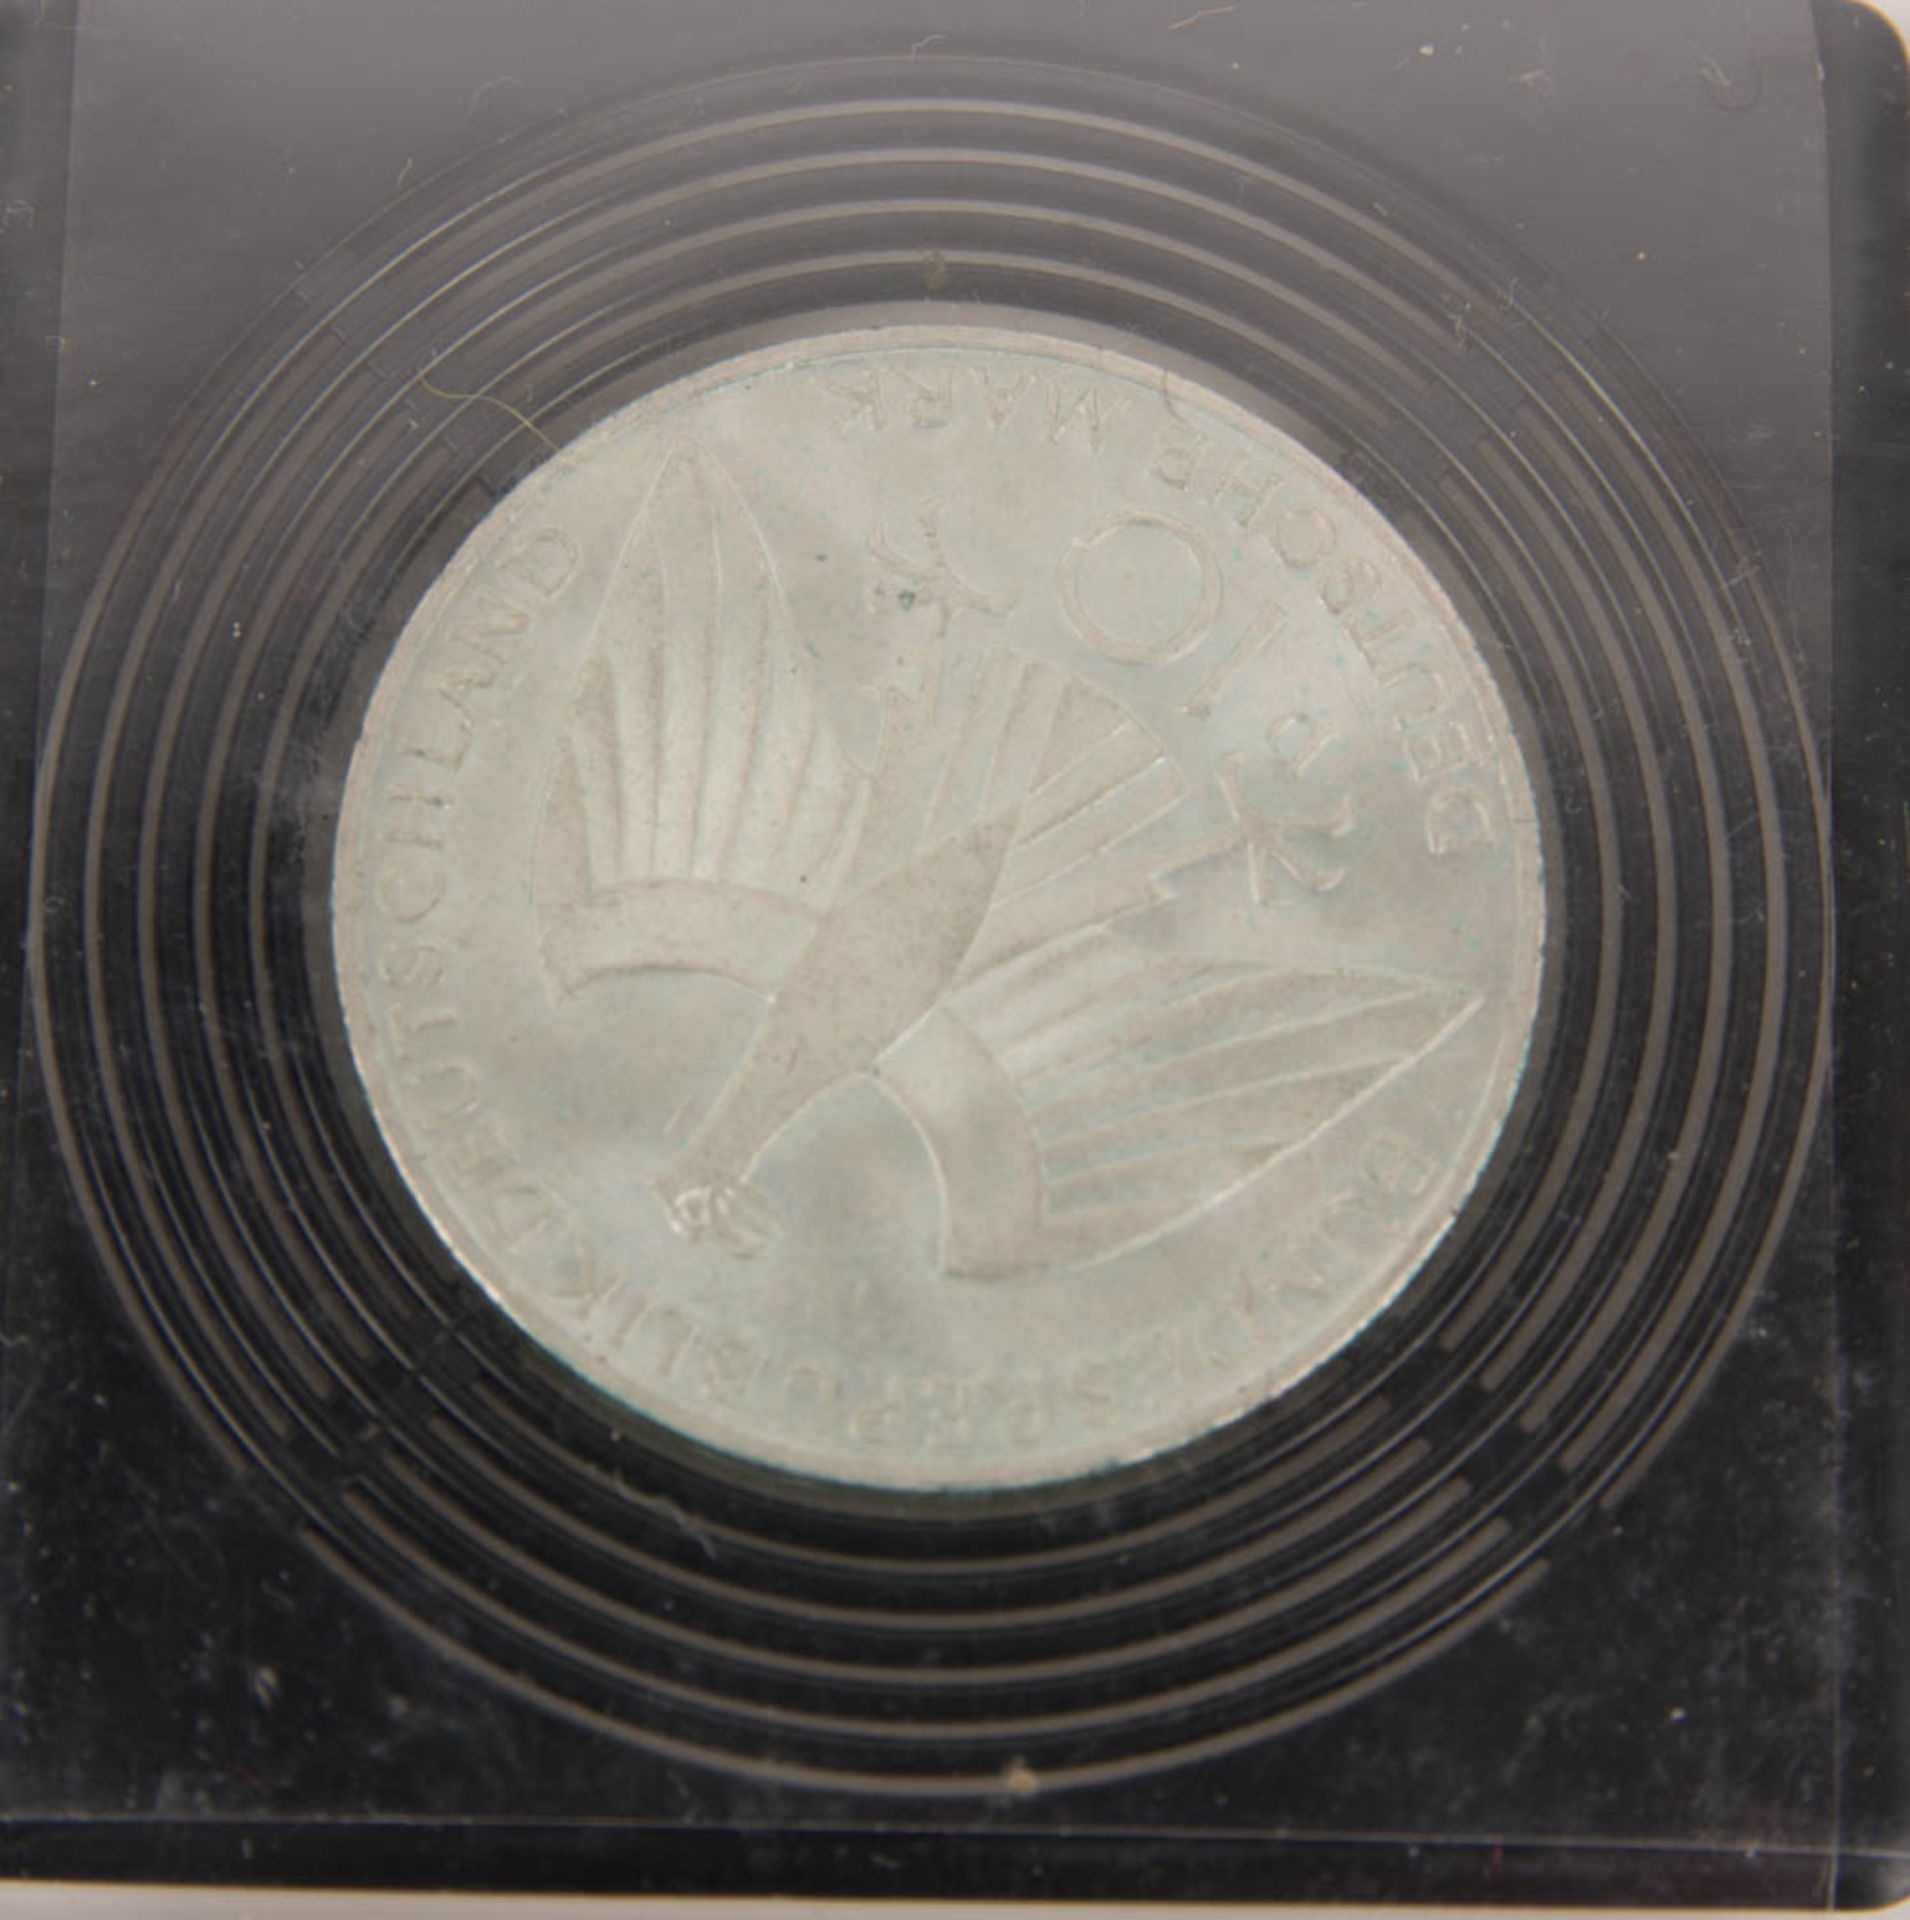 BRD, Drei 10-DM-Silbergedenkmünzen, Olympiade 1972. - Bild 3 aus 7